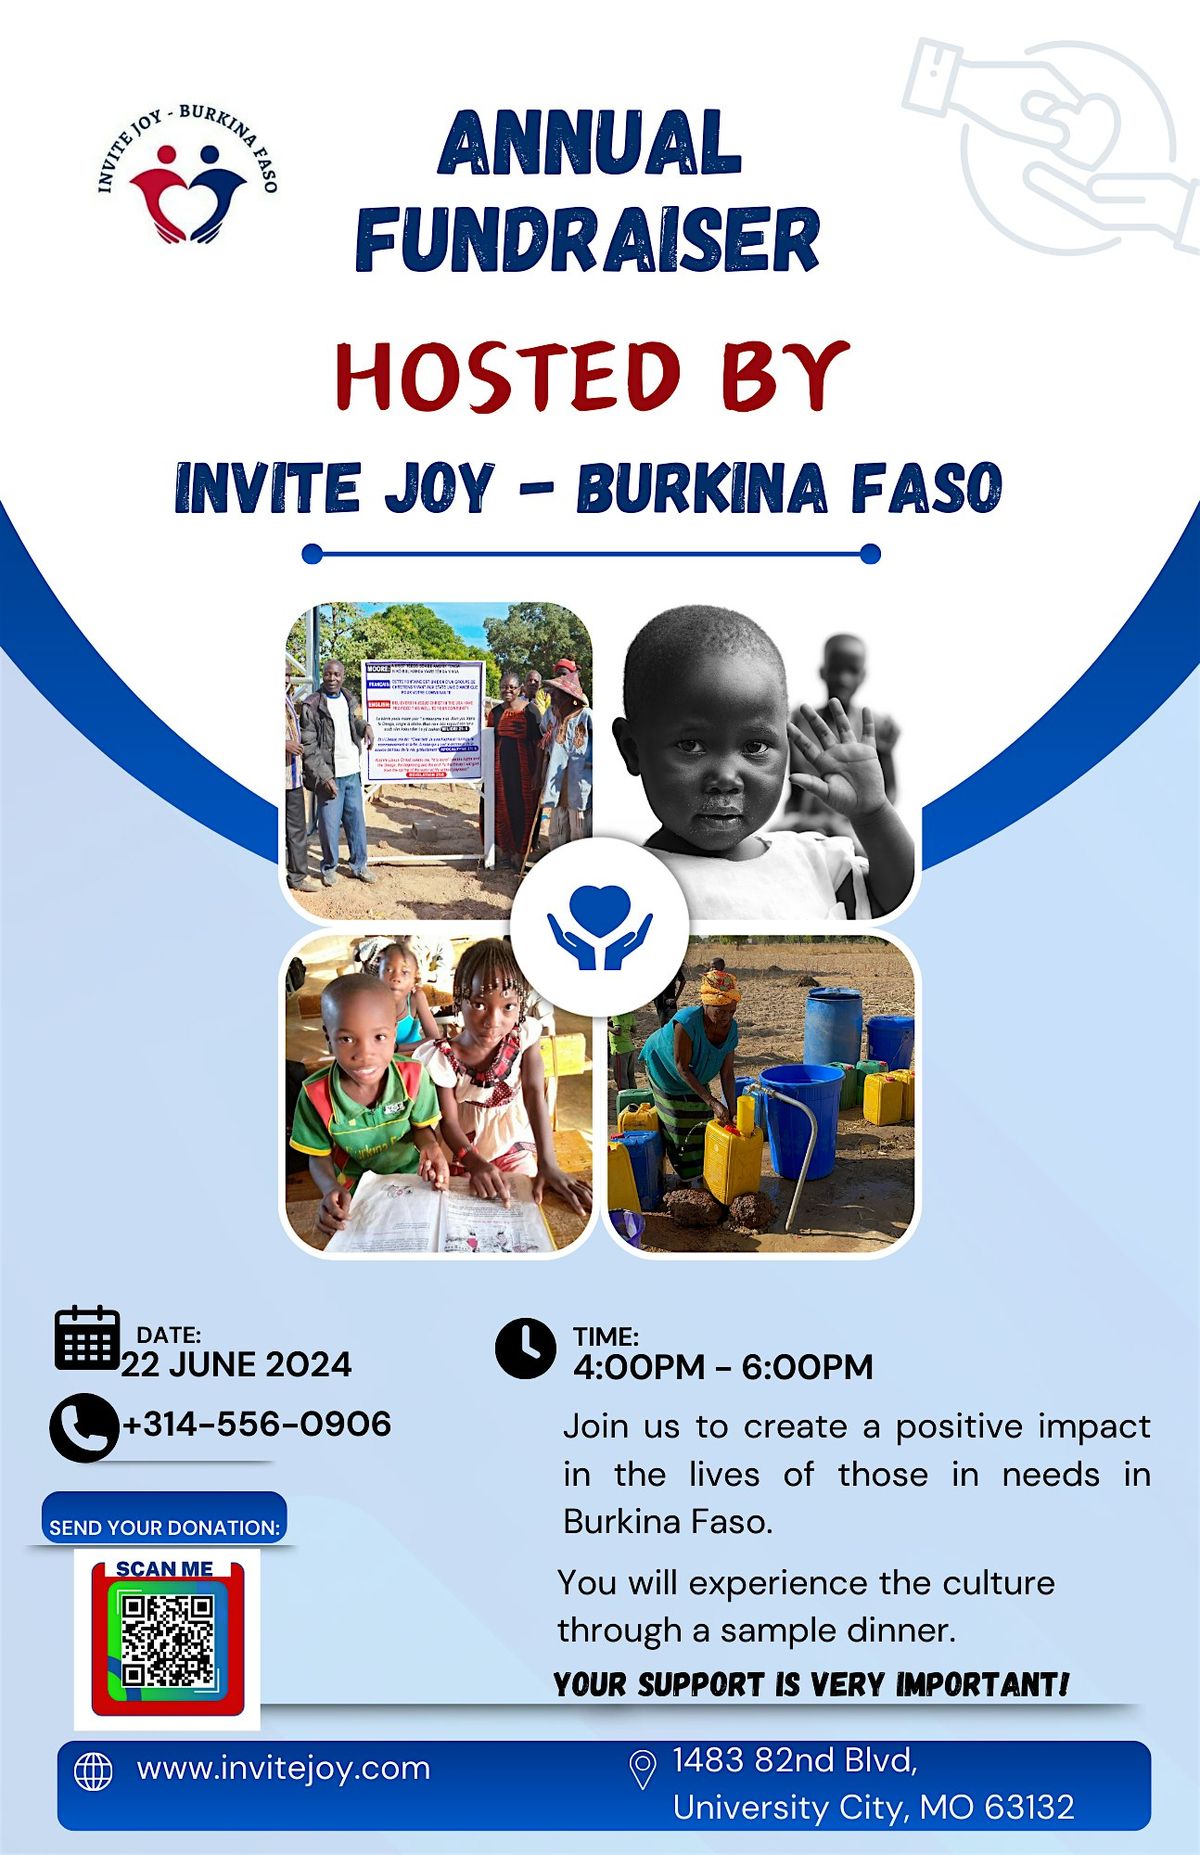 Invite Joy - Burkina Faso 2024 Fundraising Dinner